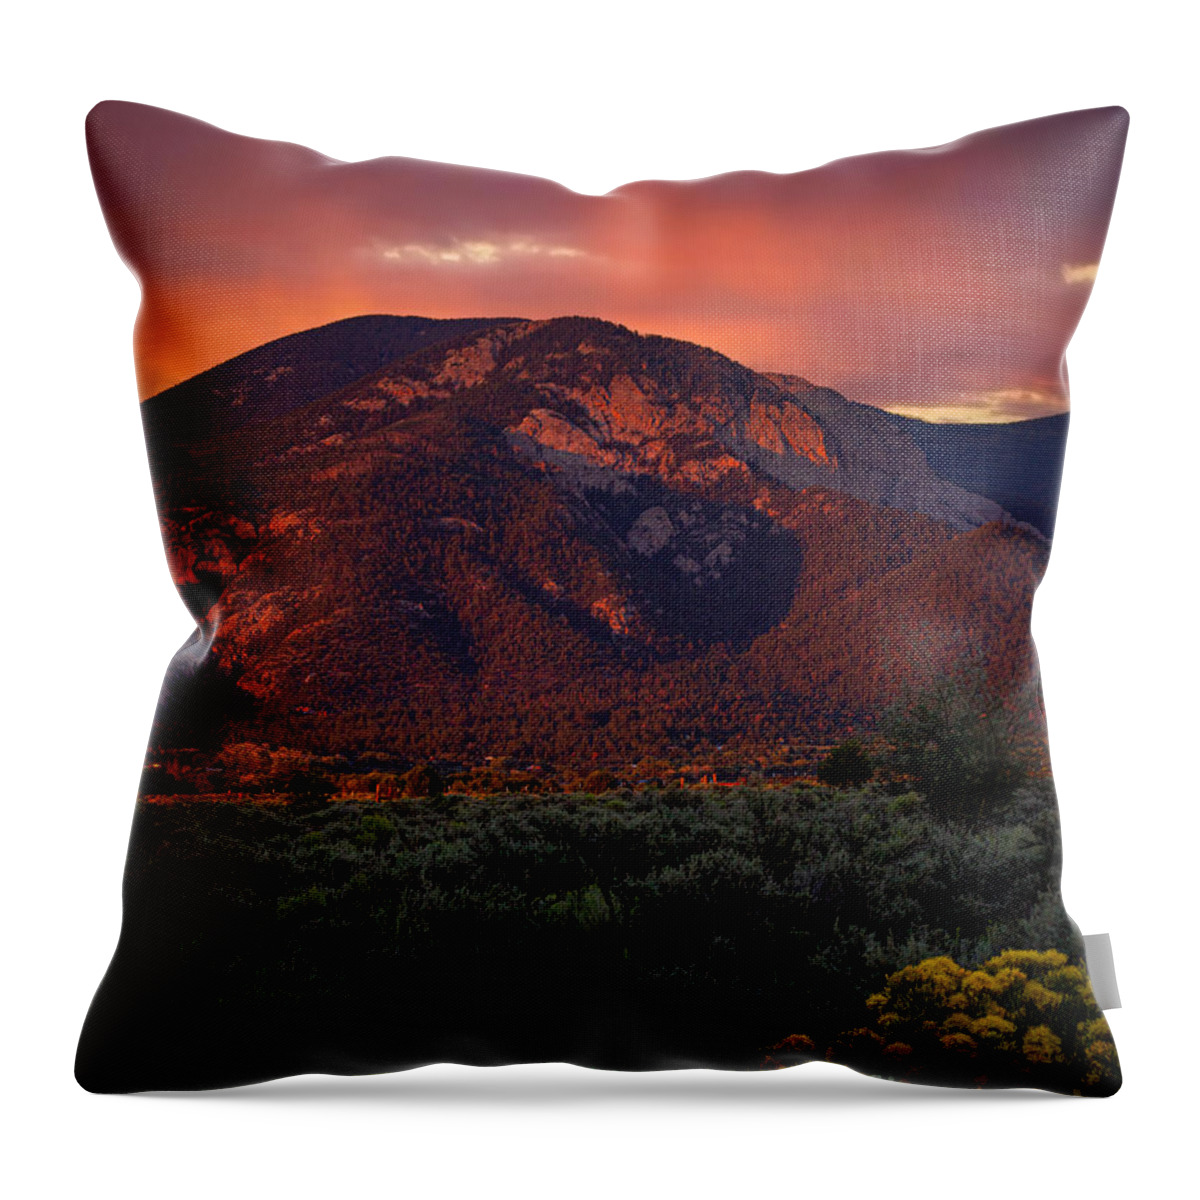  Throw Pillow featuring the photograph Lucero Peak Sunset by Elijah Rael